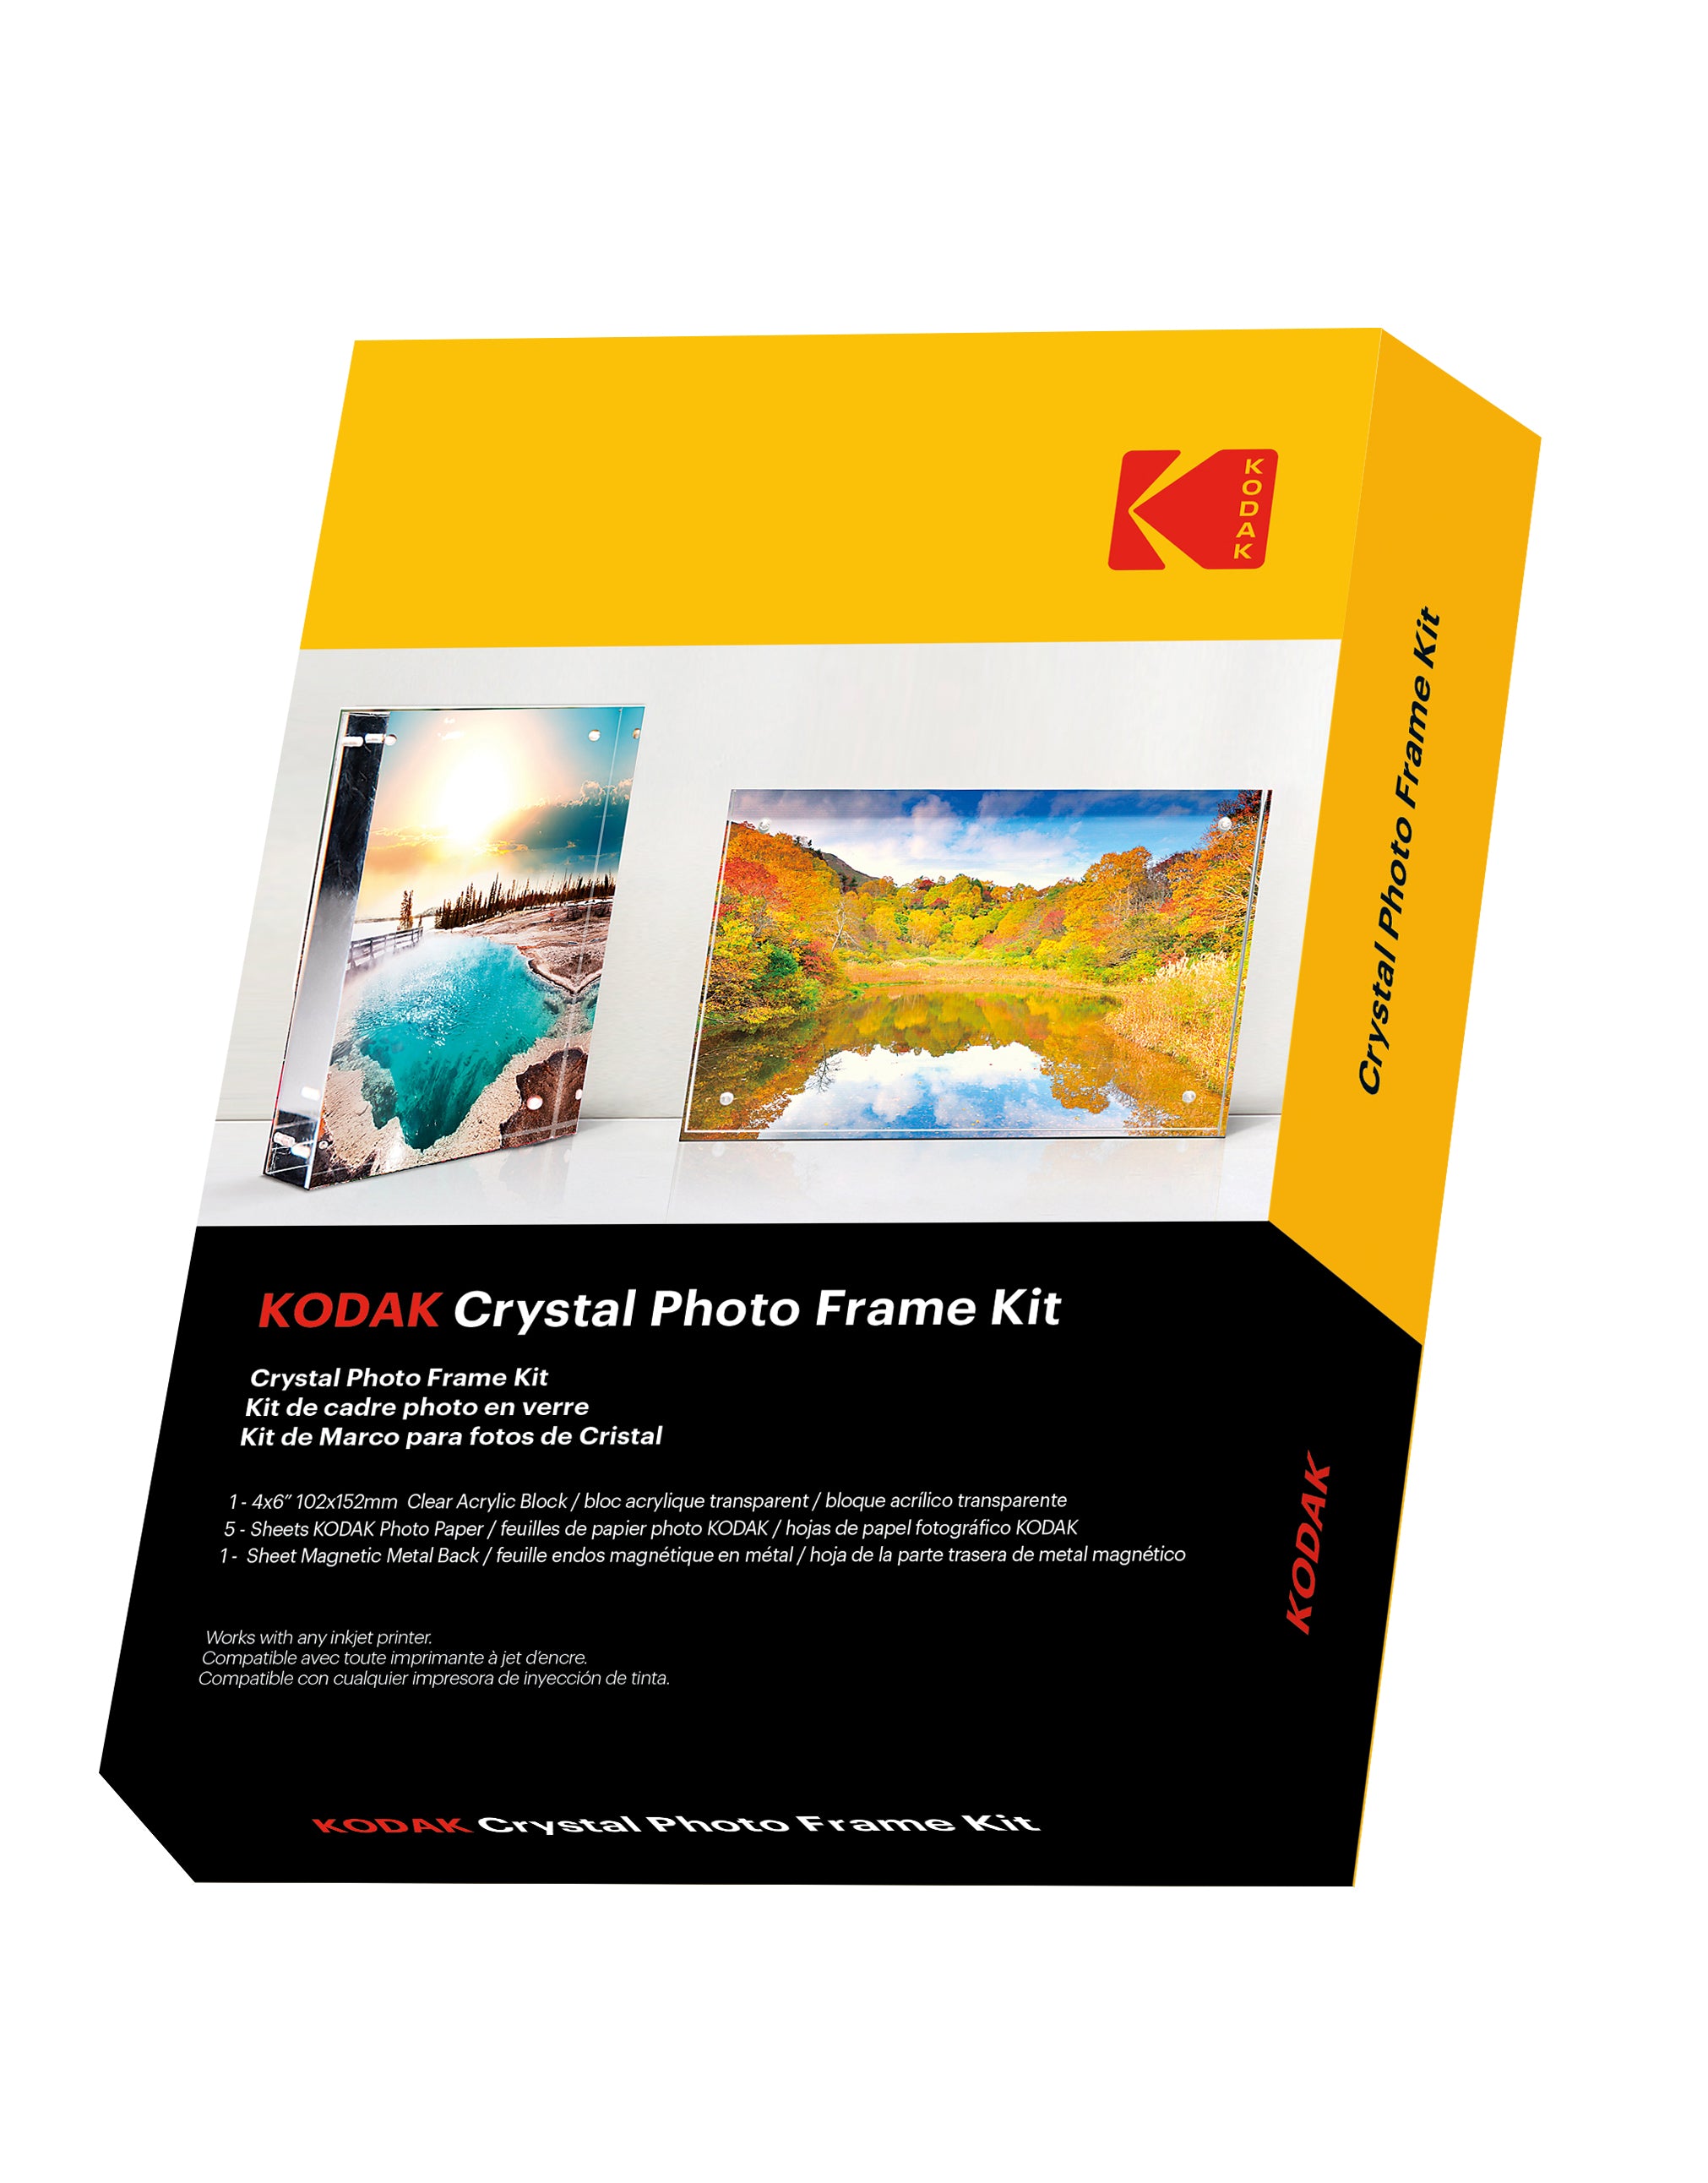 Kodak Crystal Photo Frame Kit 4R -  4 x 6 "